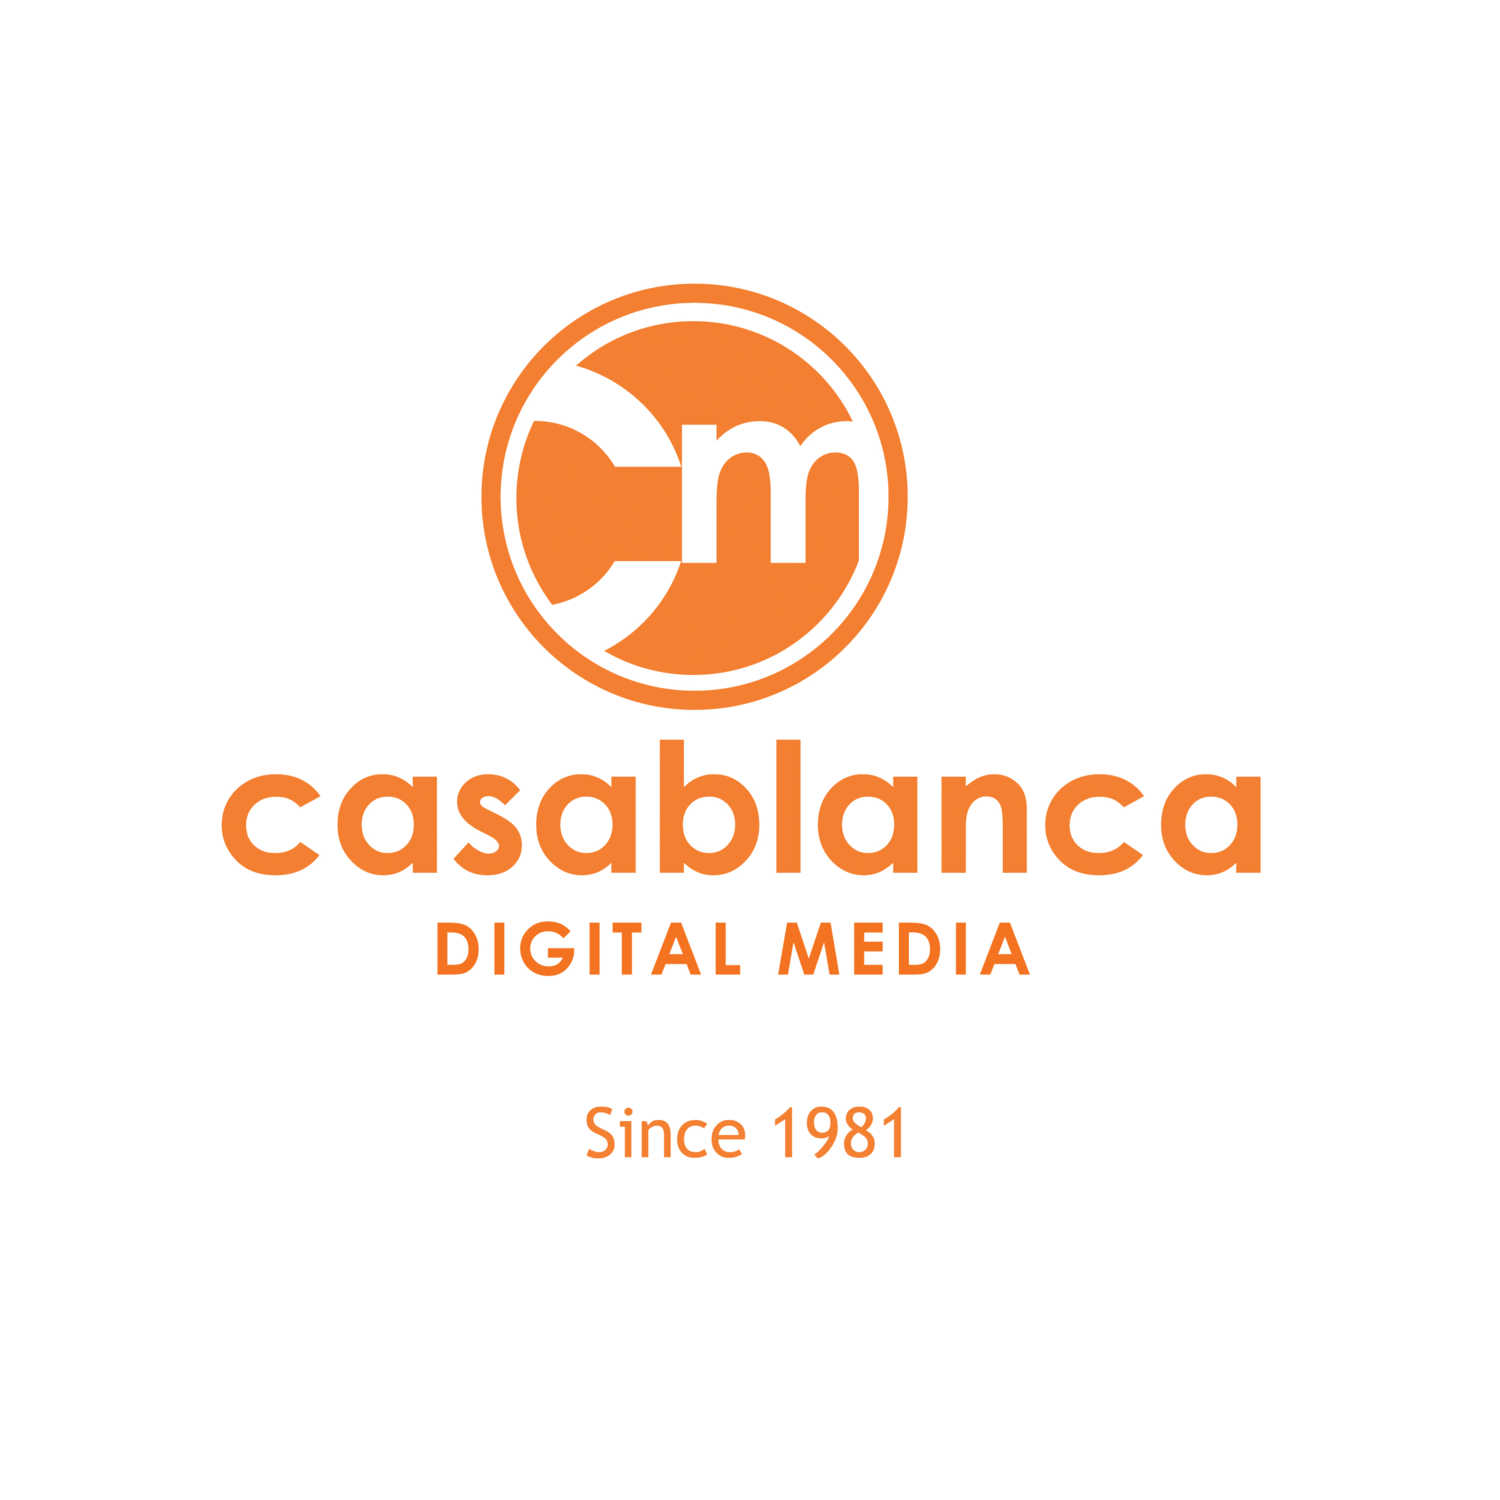 Casablanca Digital Media